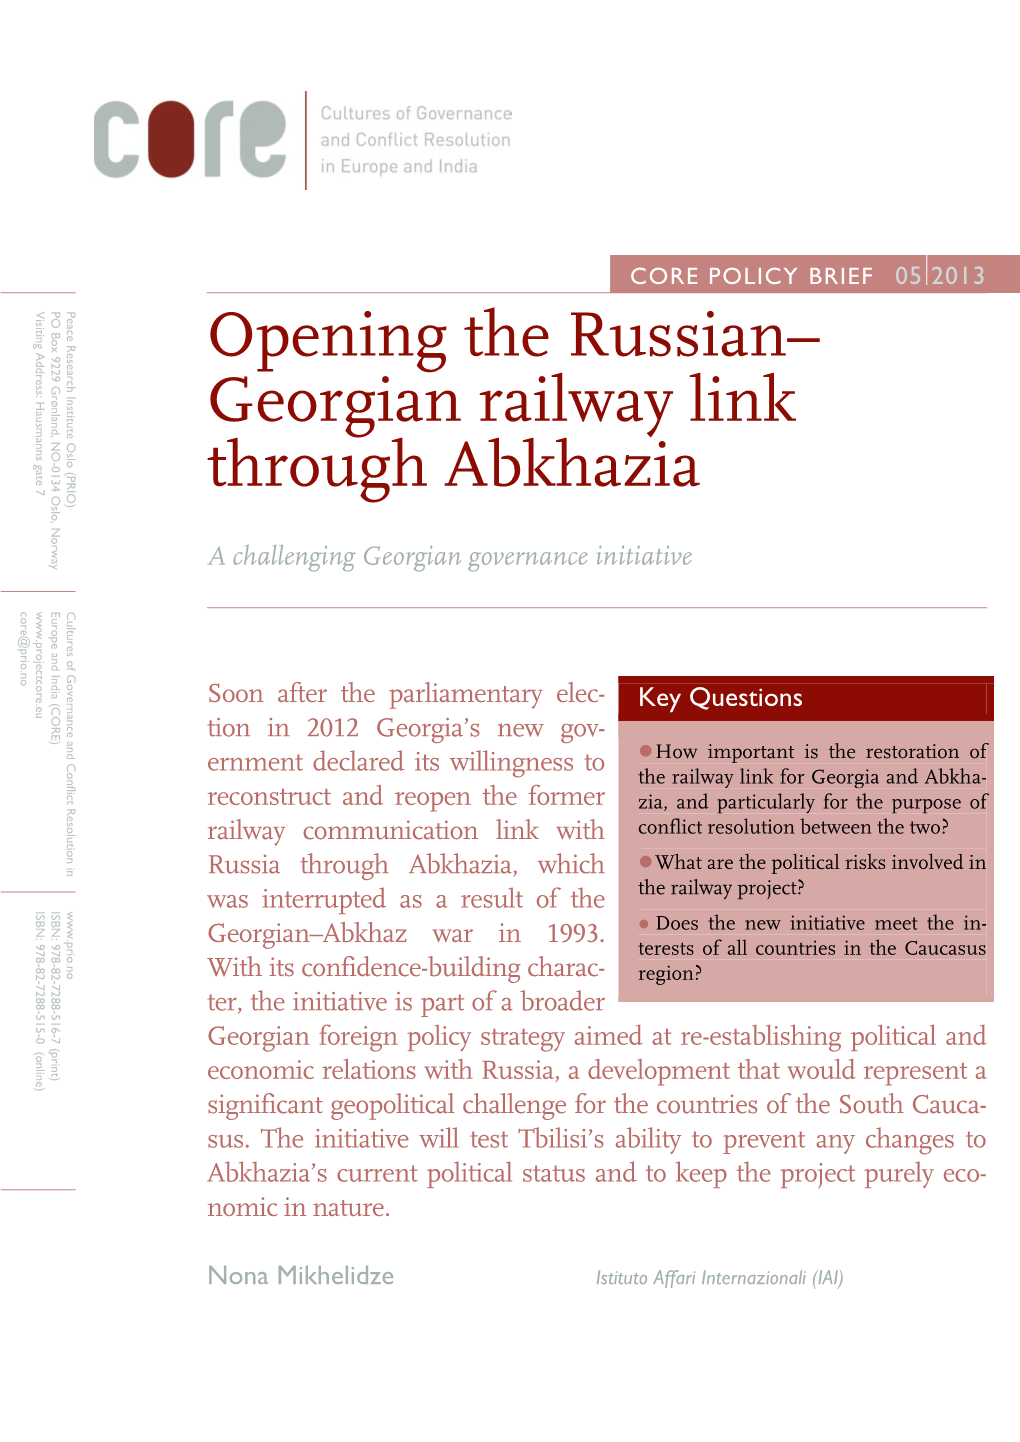 Opening the Russian– Georgian Railway Link Through Abkhazia